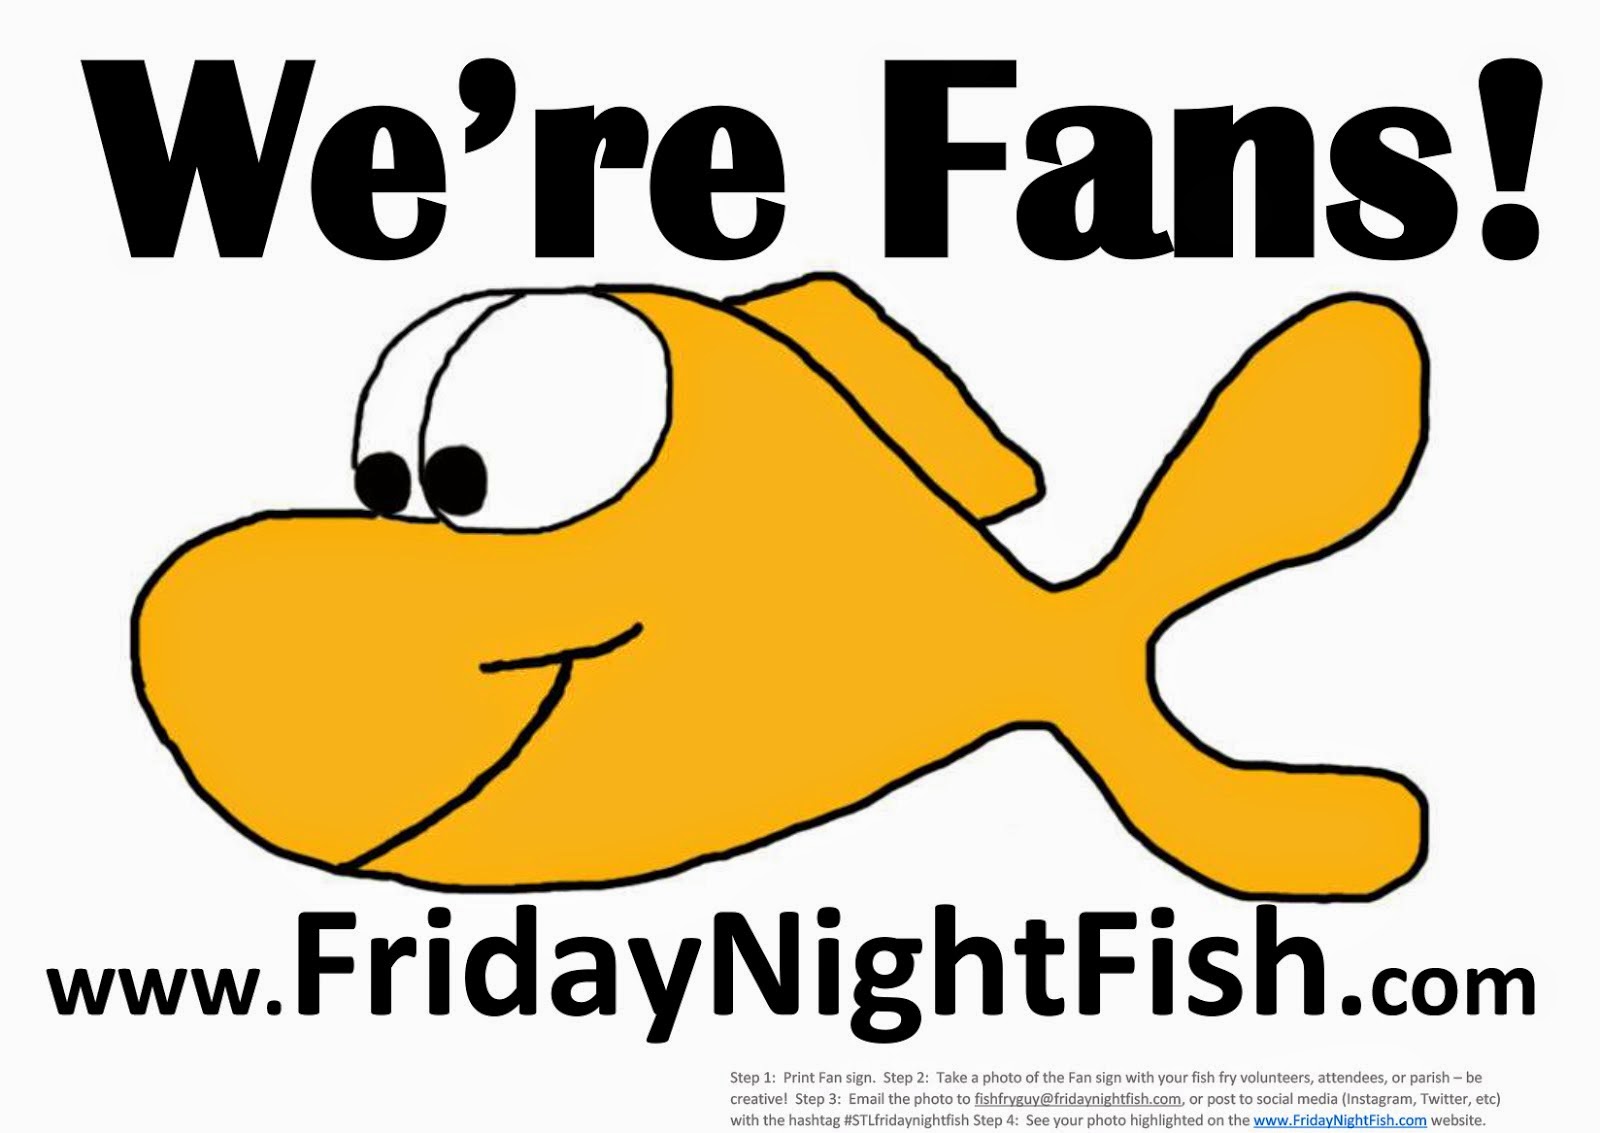 Friday Night Fish